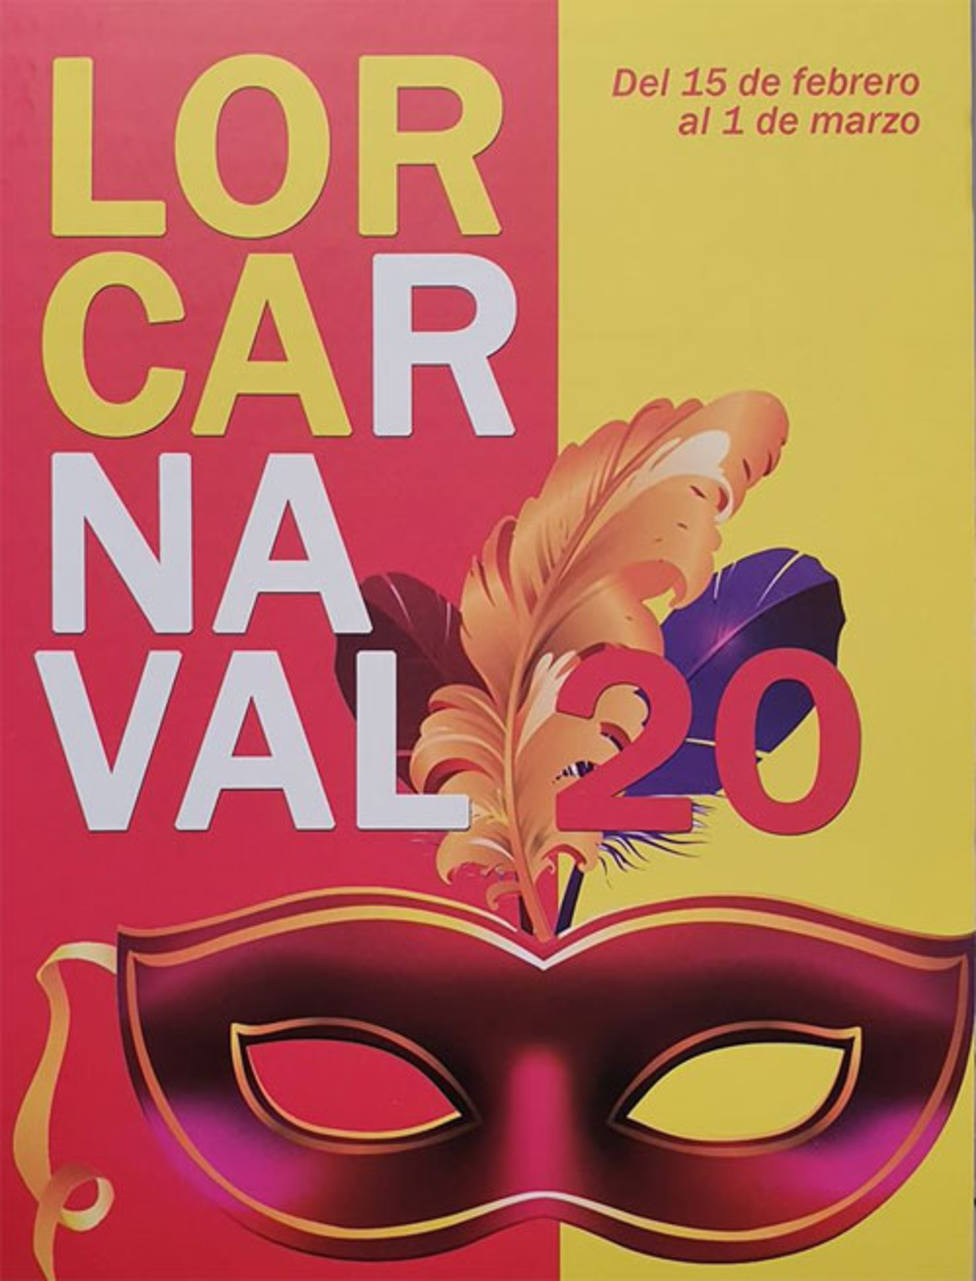 Unas 1.500 personas de 20 comparsas participan este sábado en el carnaval de Lorca